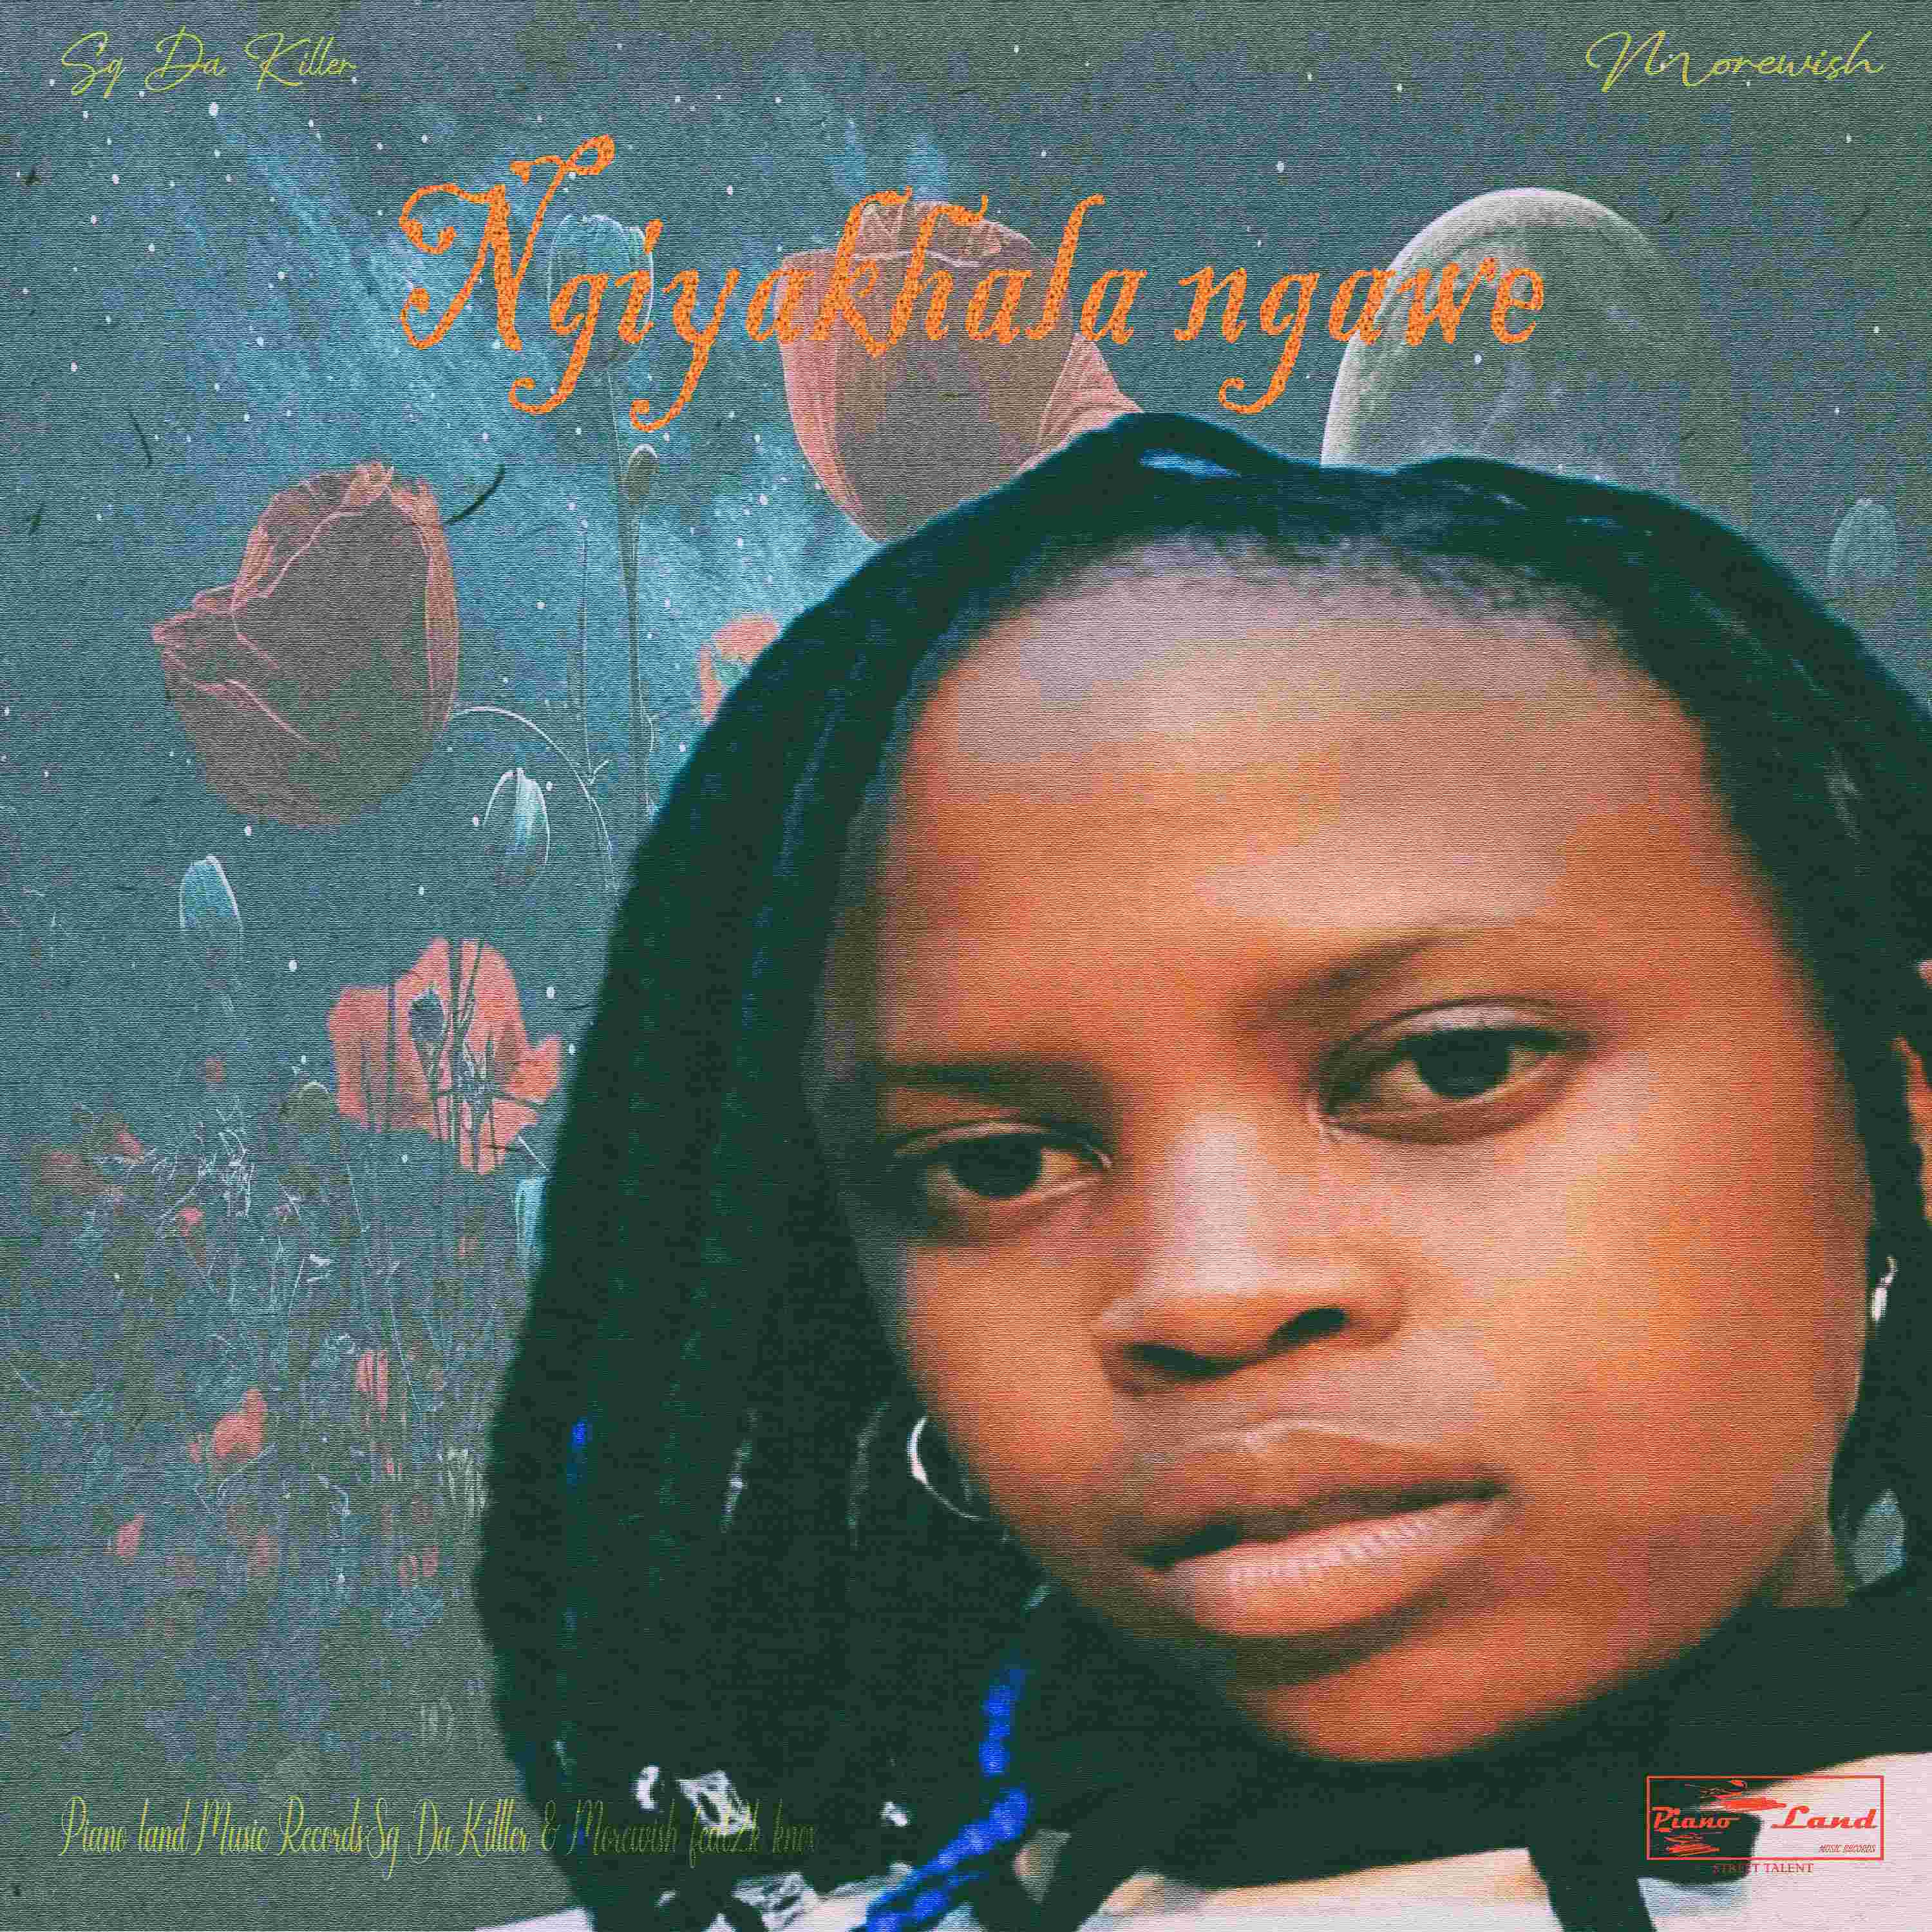 Ngiyakhala ngawe(feat.2k knox) - Sg Da Killer & Morewish